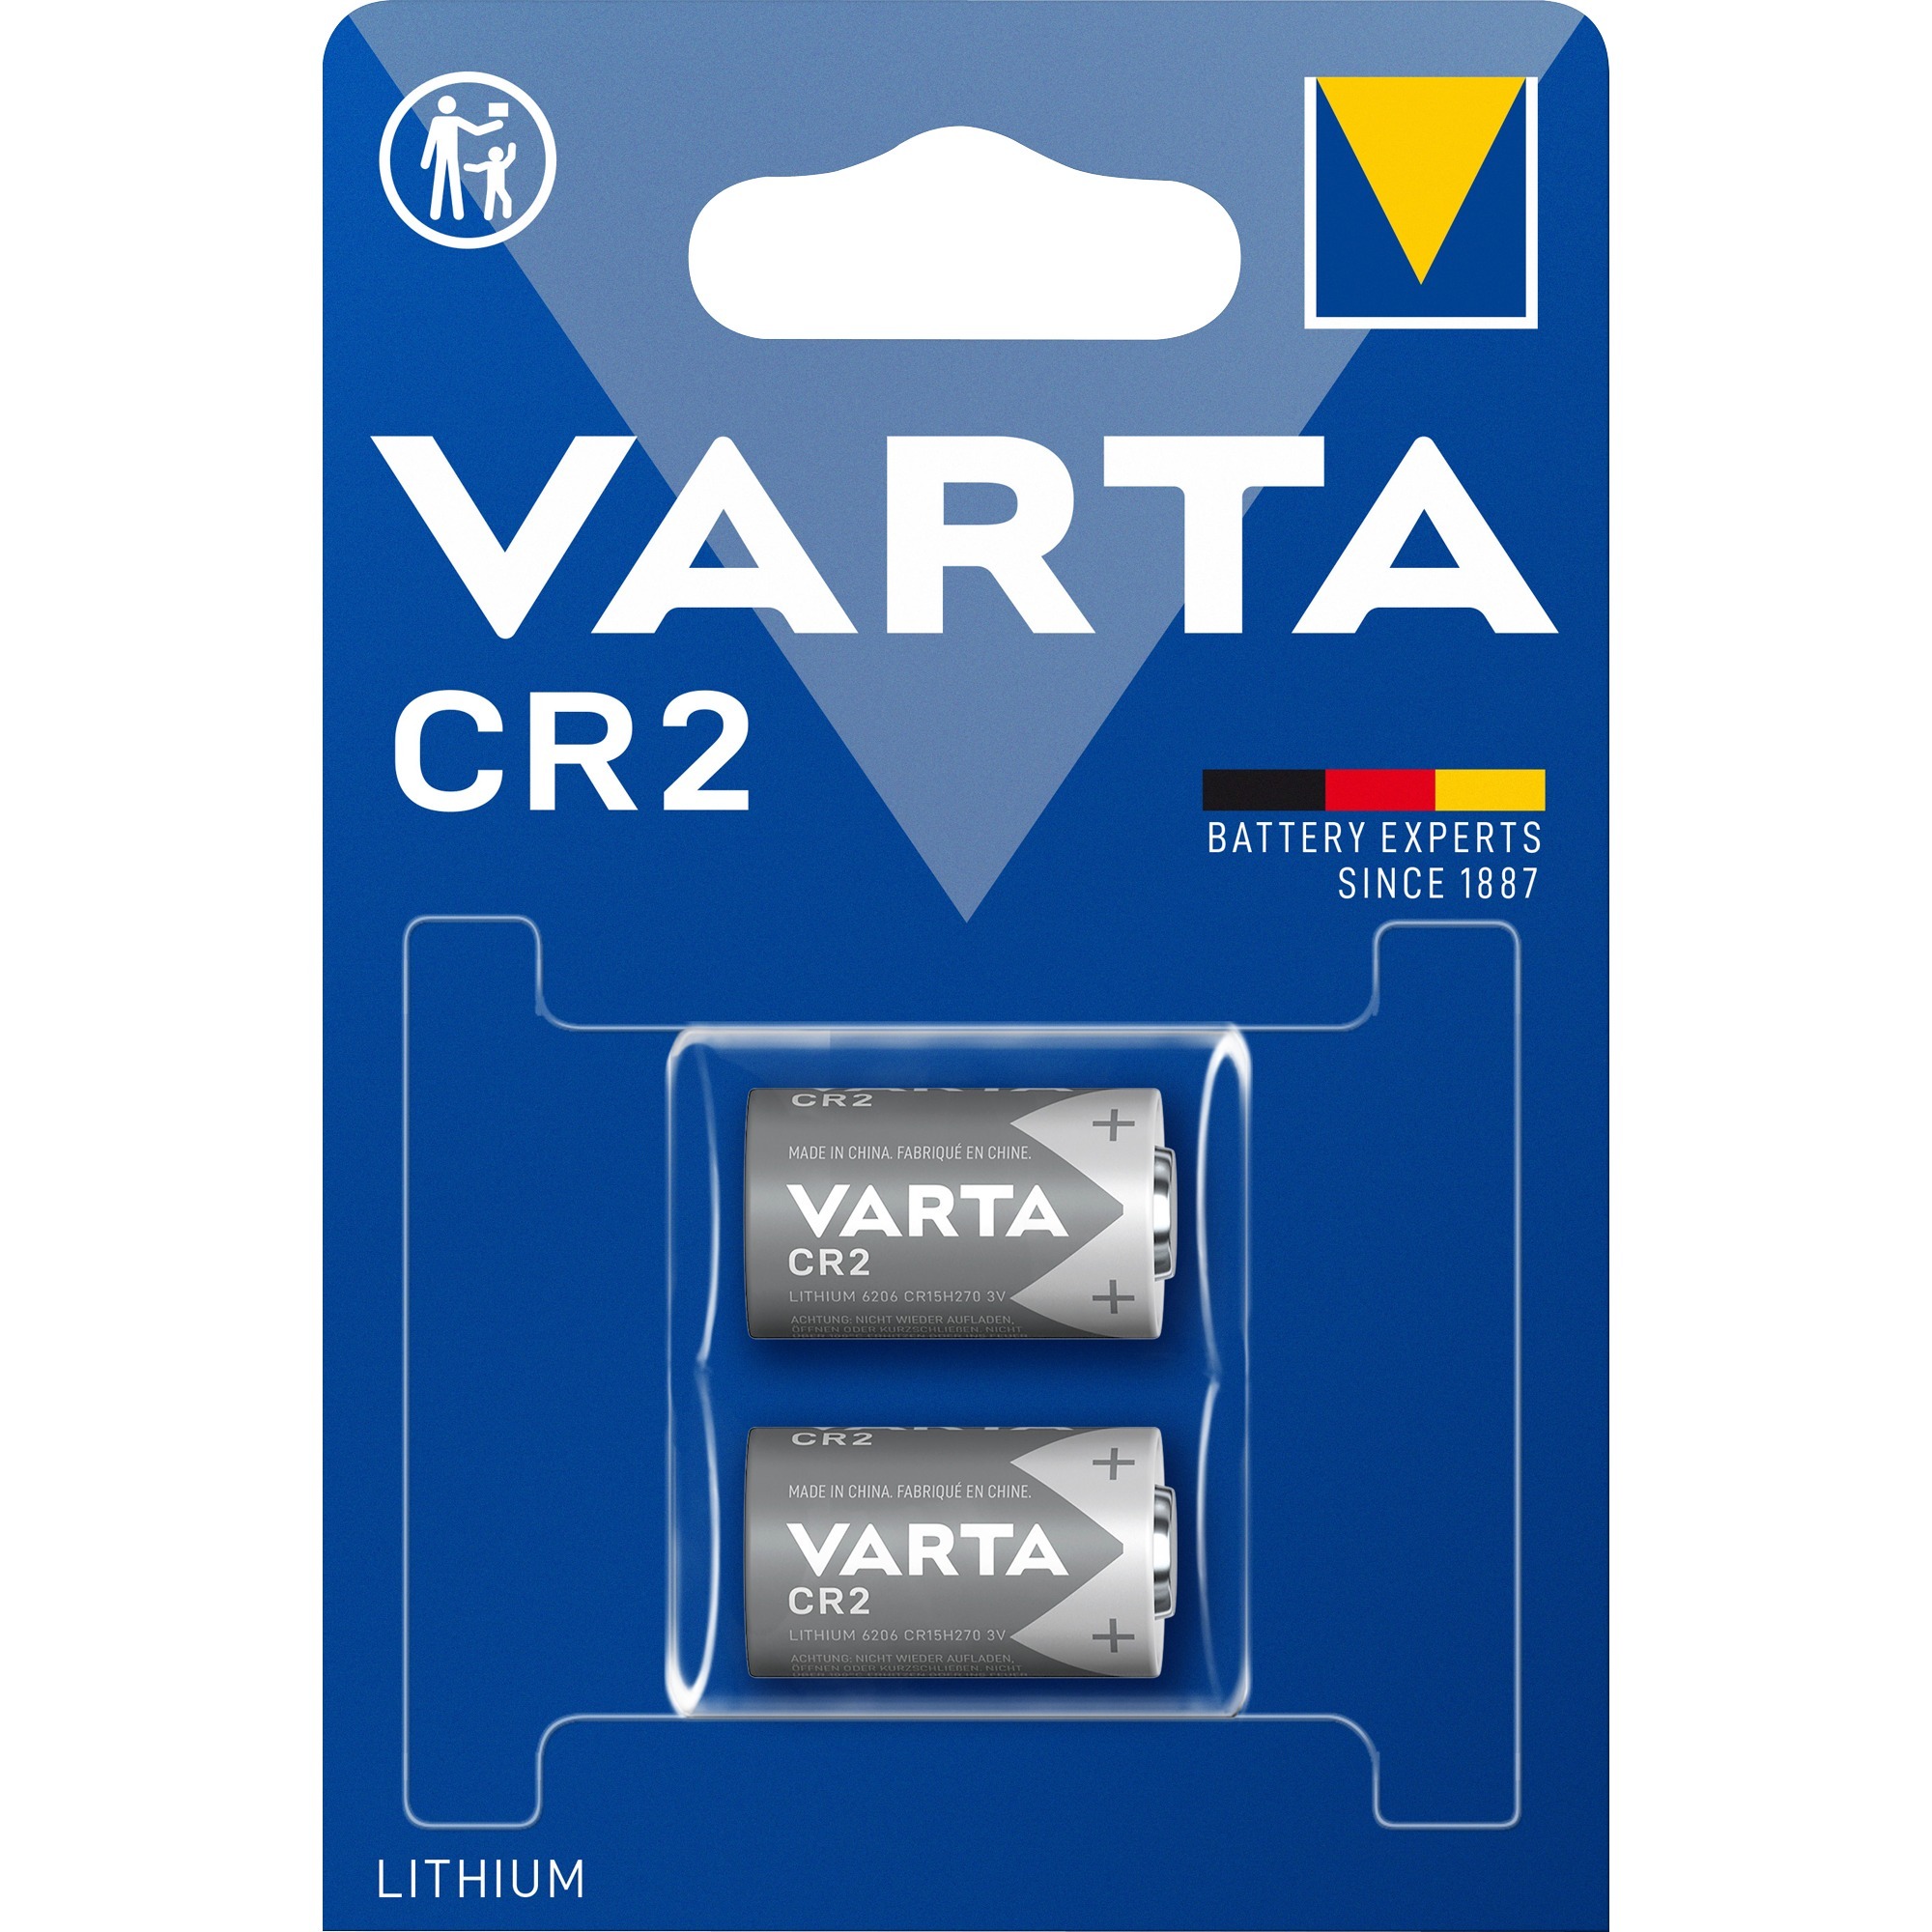 Image of Alternate - CR2, Batterie online einkaufen bei Alternate